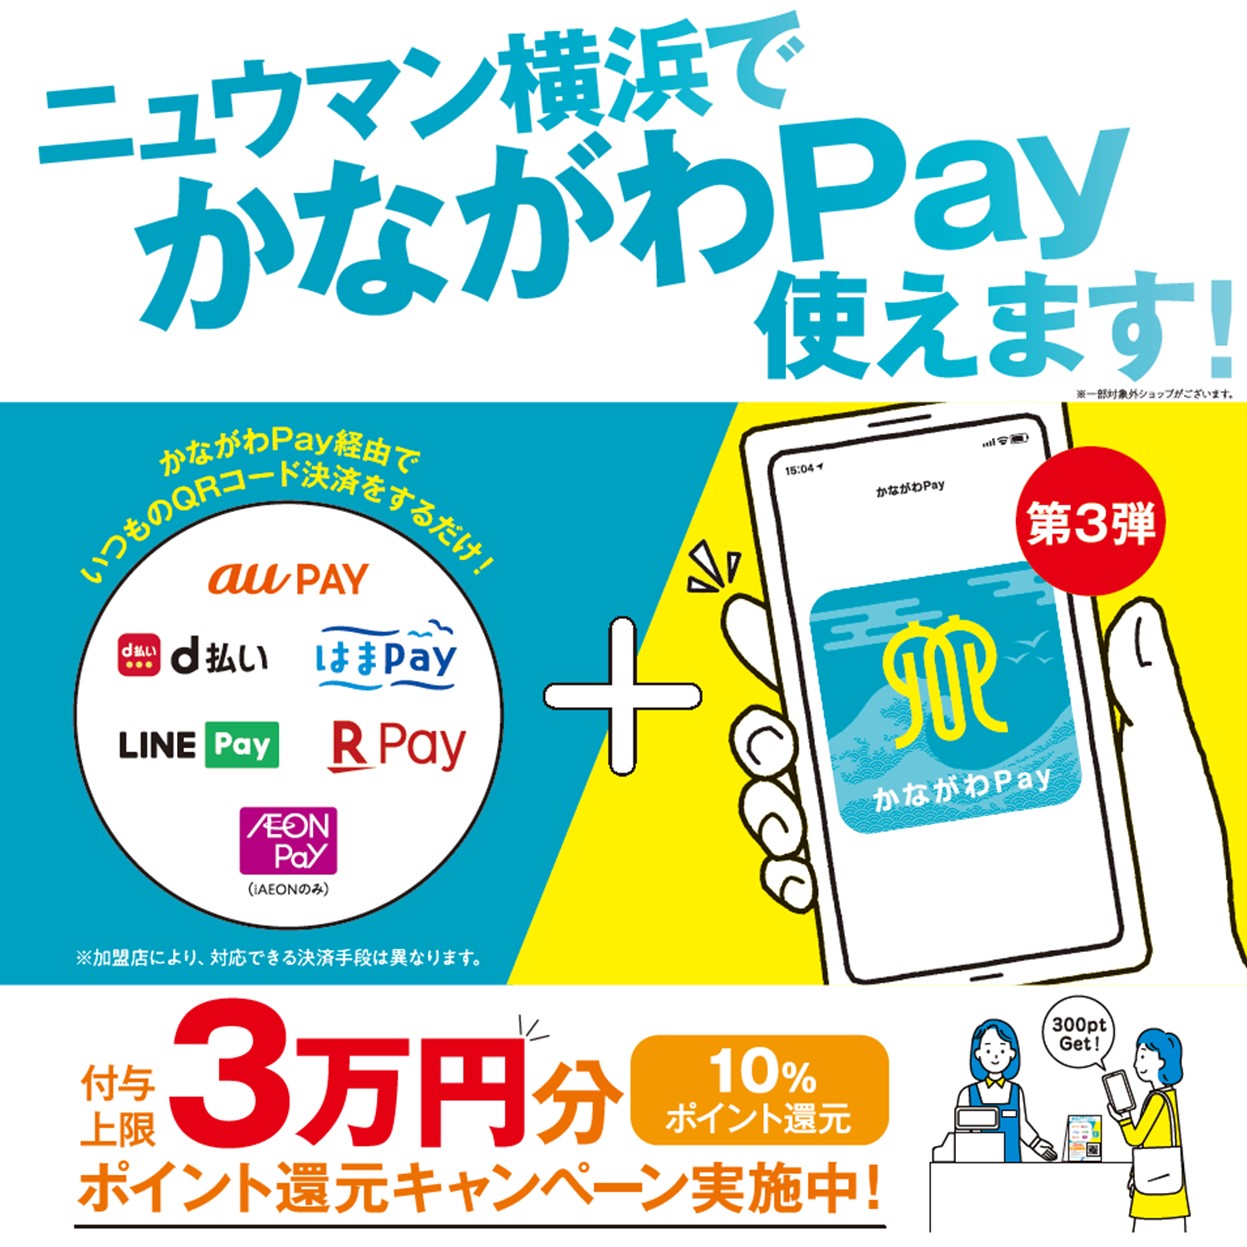 【ポイント付与終了】最大3万円分ポイント還元キャンペーン「かながわPay第3弾」スタート！